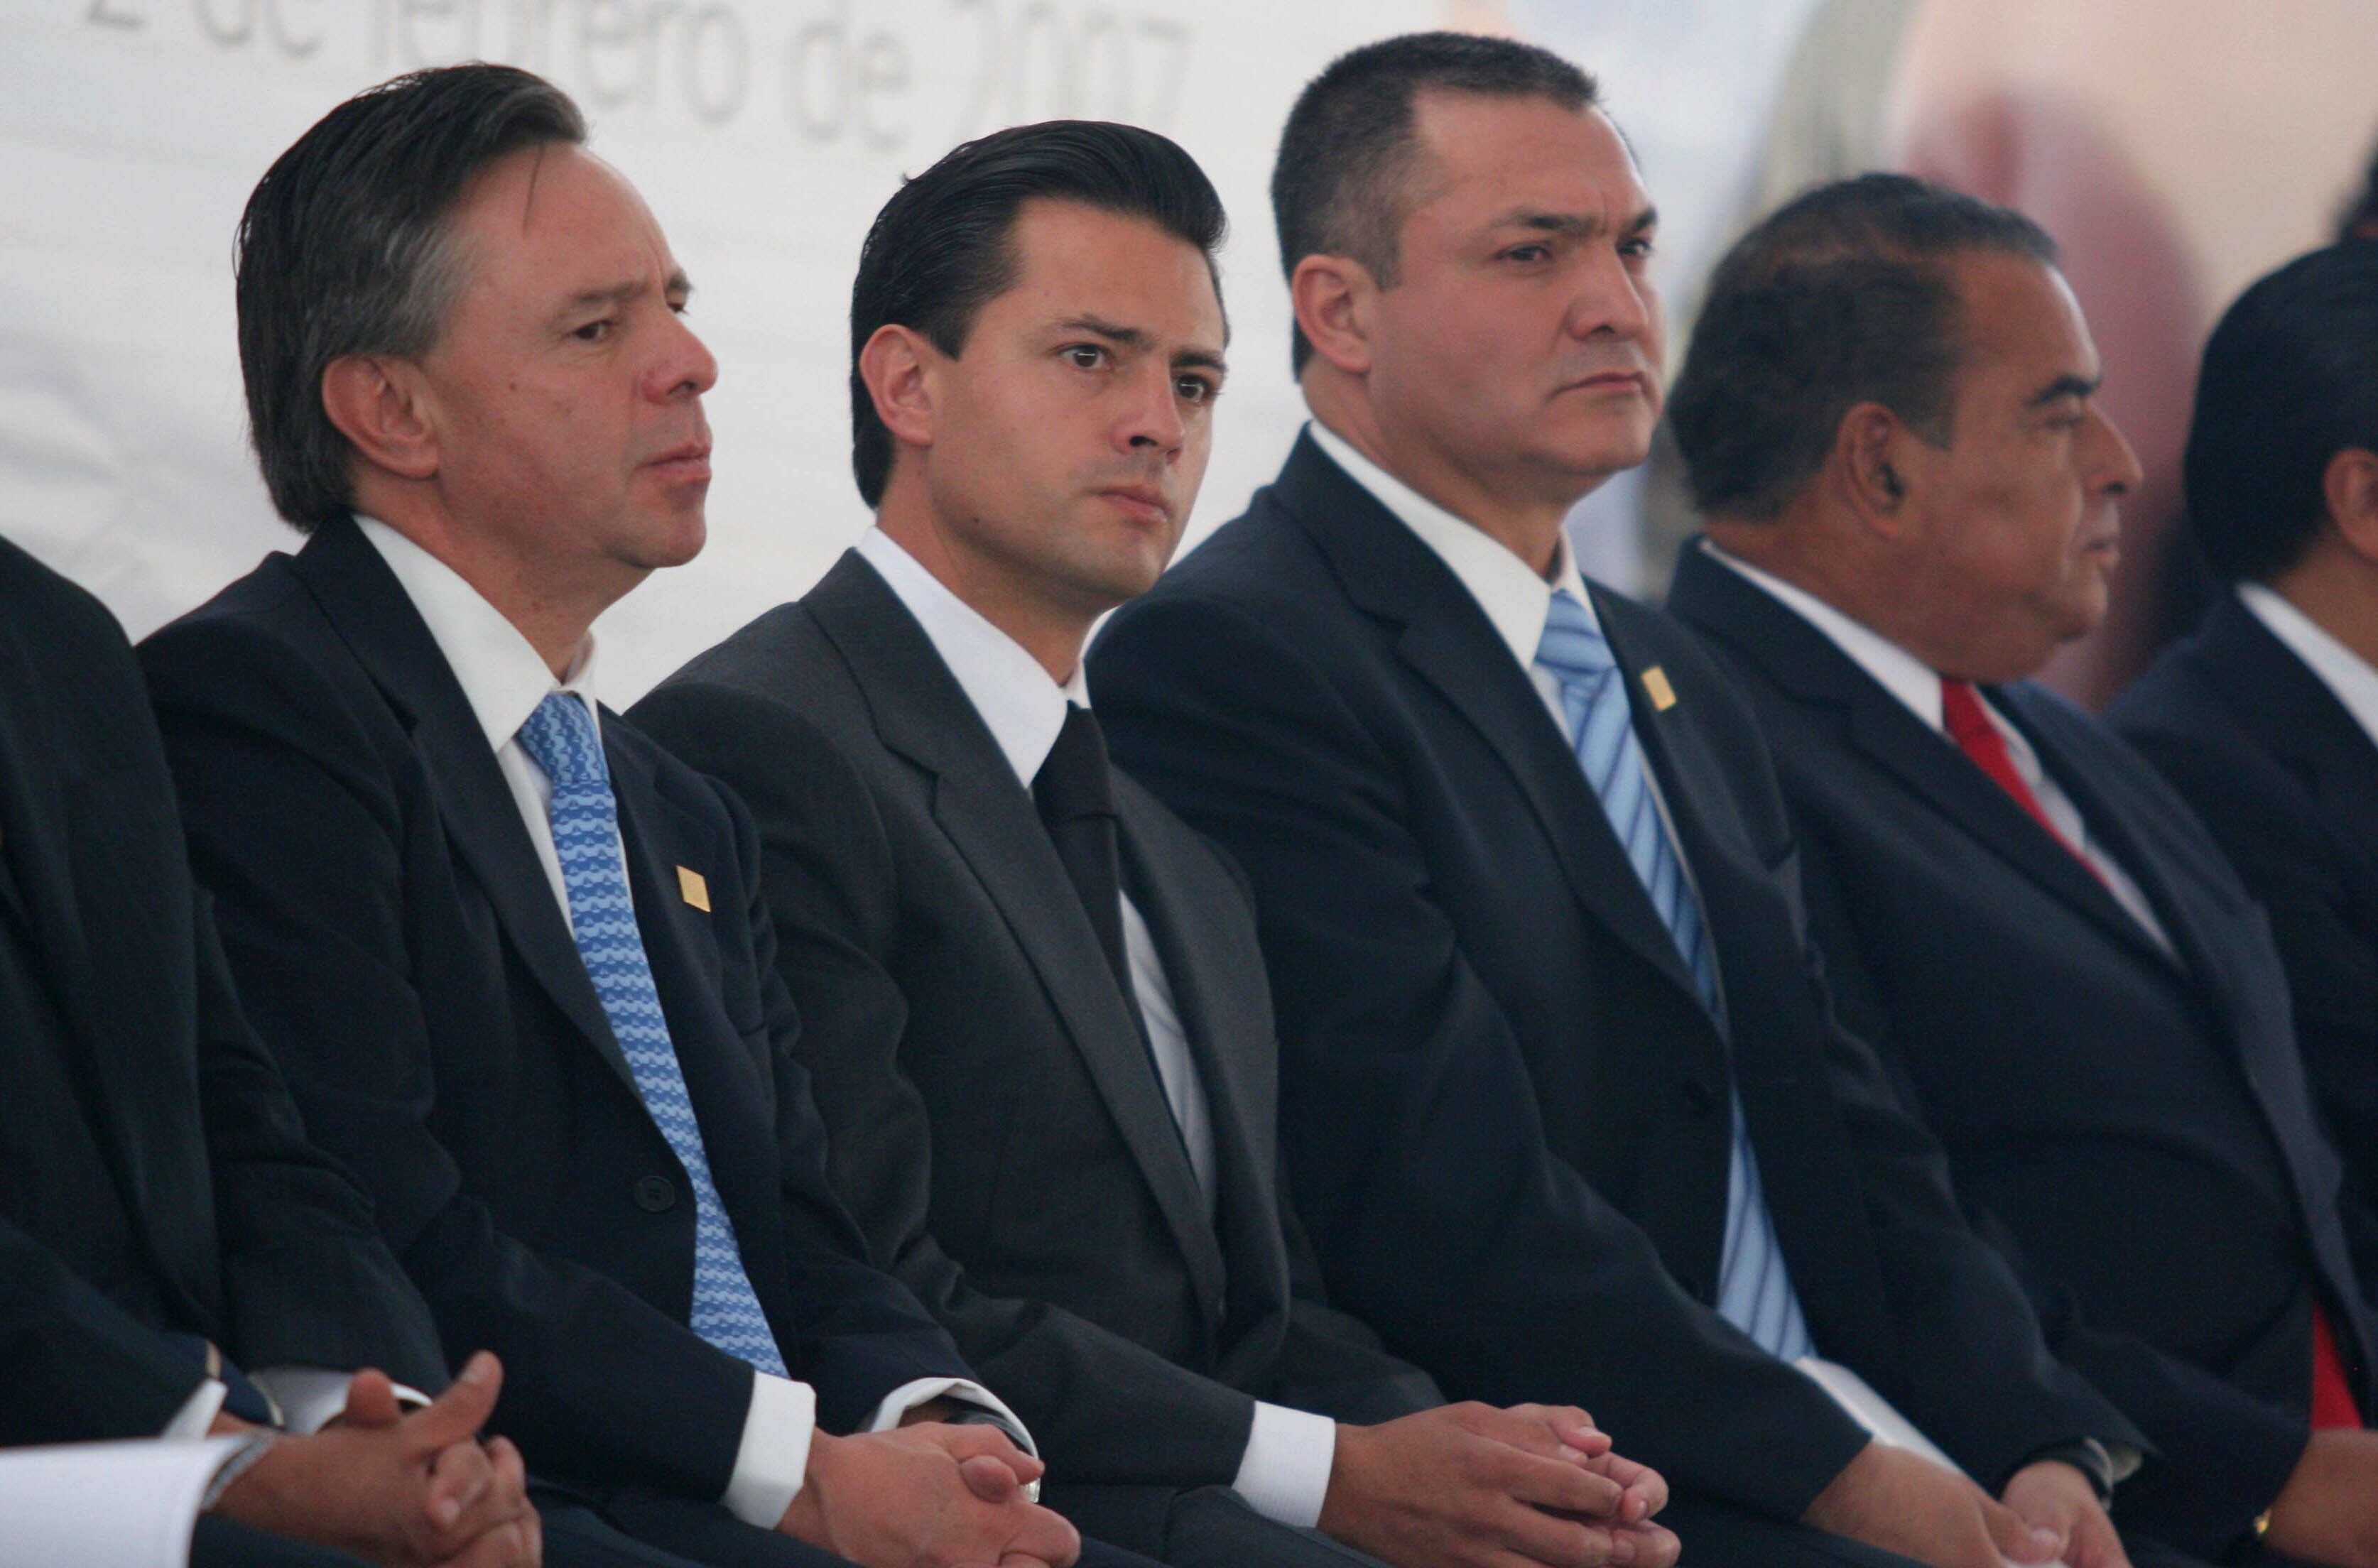 Eduardo Medina Mora, Procurador General de la Republica,  Enrique Peña Nieto, gobernador mexiquense y Genaro Garcia Luna , Secretario de Seguridad Pública, en febrero de 2006.